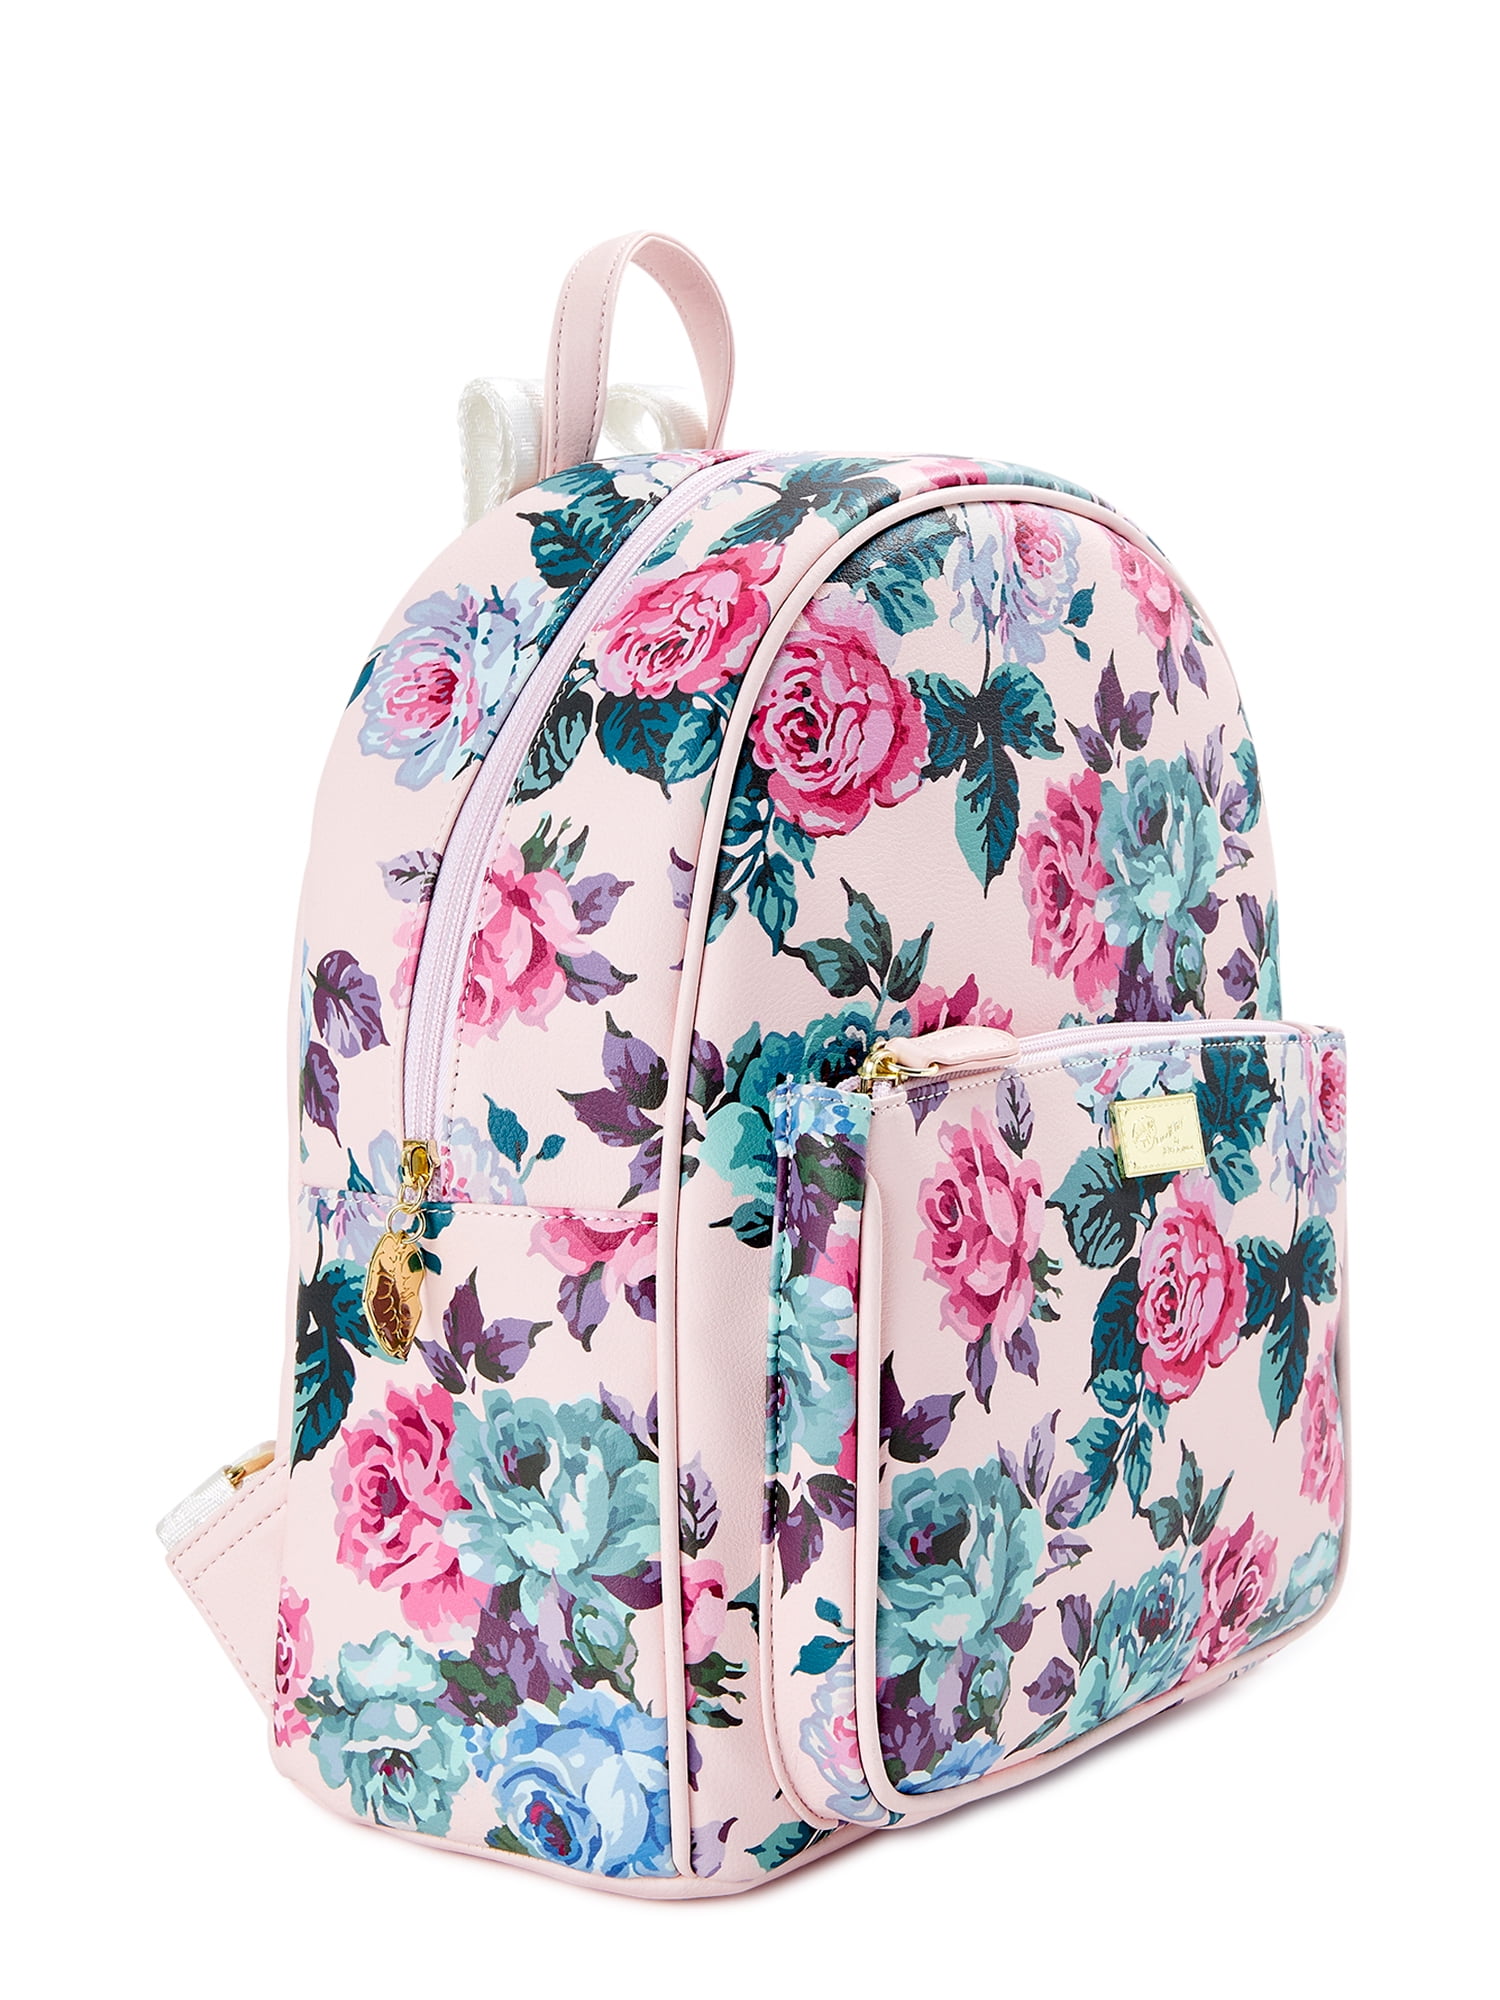 Backpacks – For the love, LV